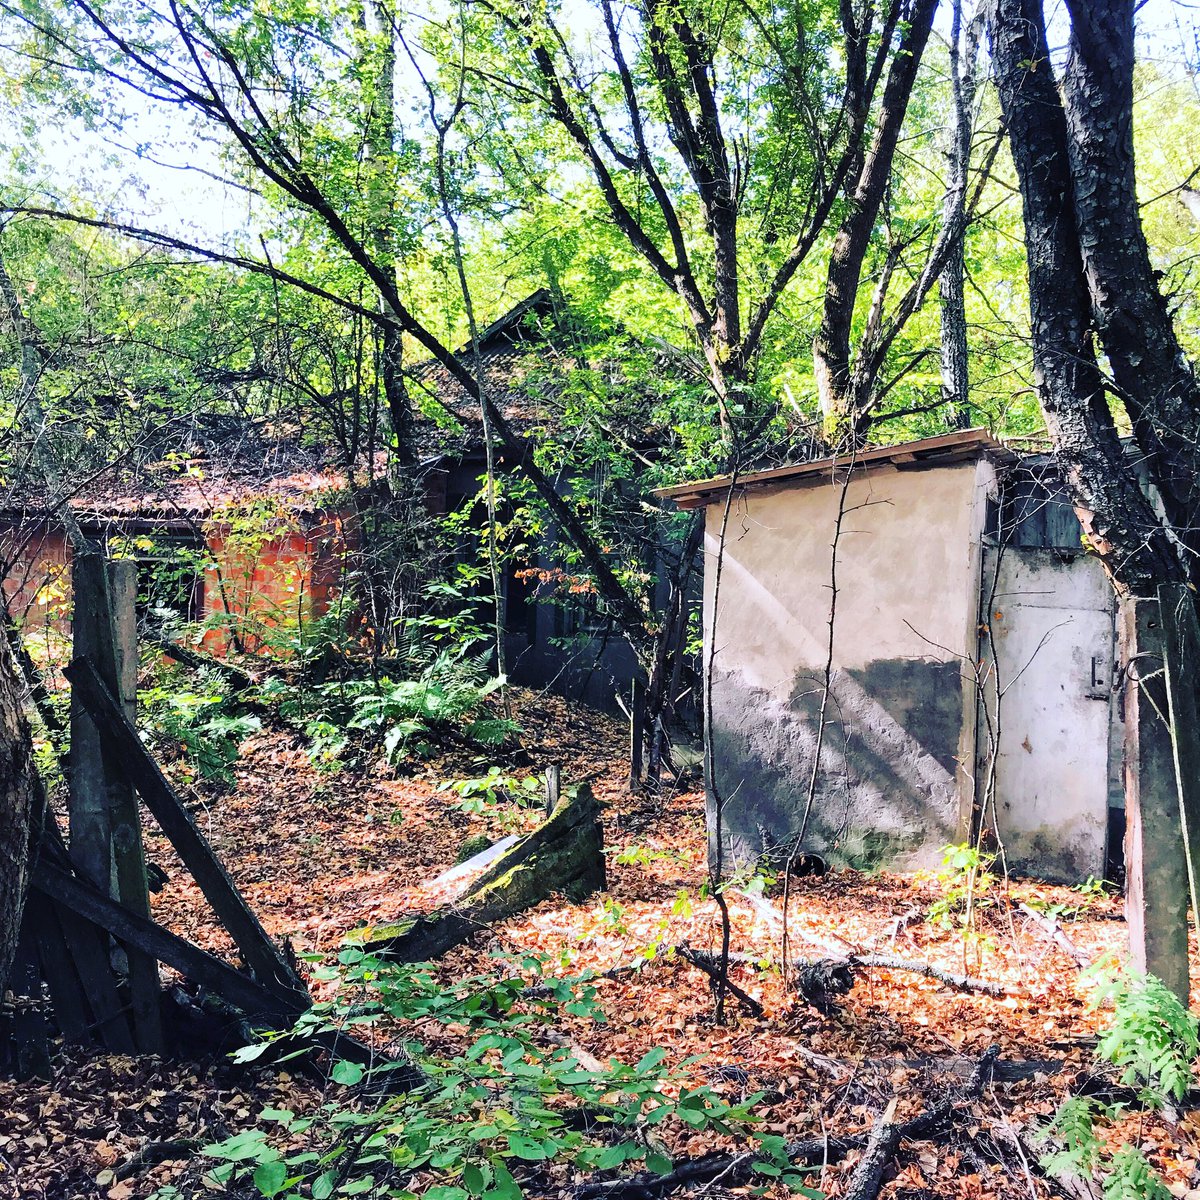 Nous débutons le voyage par la visite d’un village abandonné, Zalissya. Ce village contient un restaurant et quelques maison dans un état de délabrement très avancé. On peut visiter les maisons envahies par la nature (Plus de photos:  http://Instagram.com/nashtagstagram )